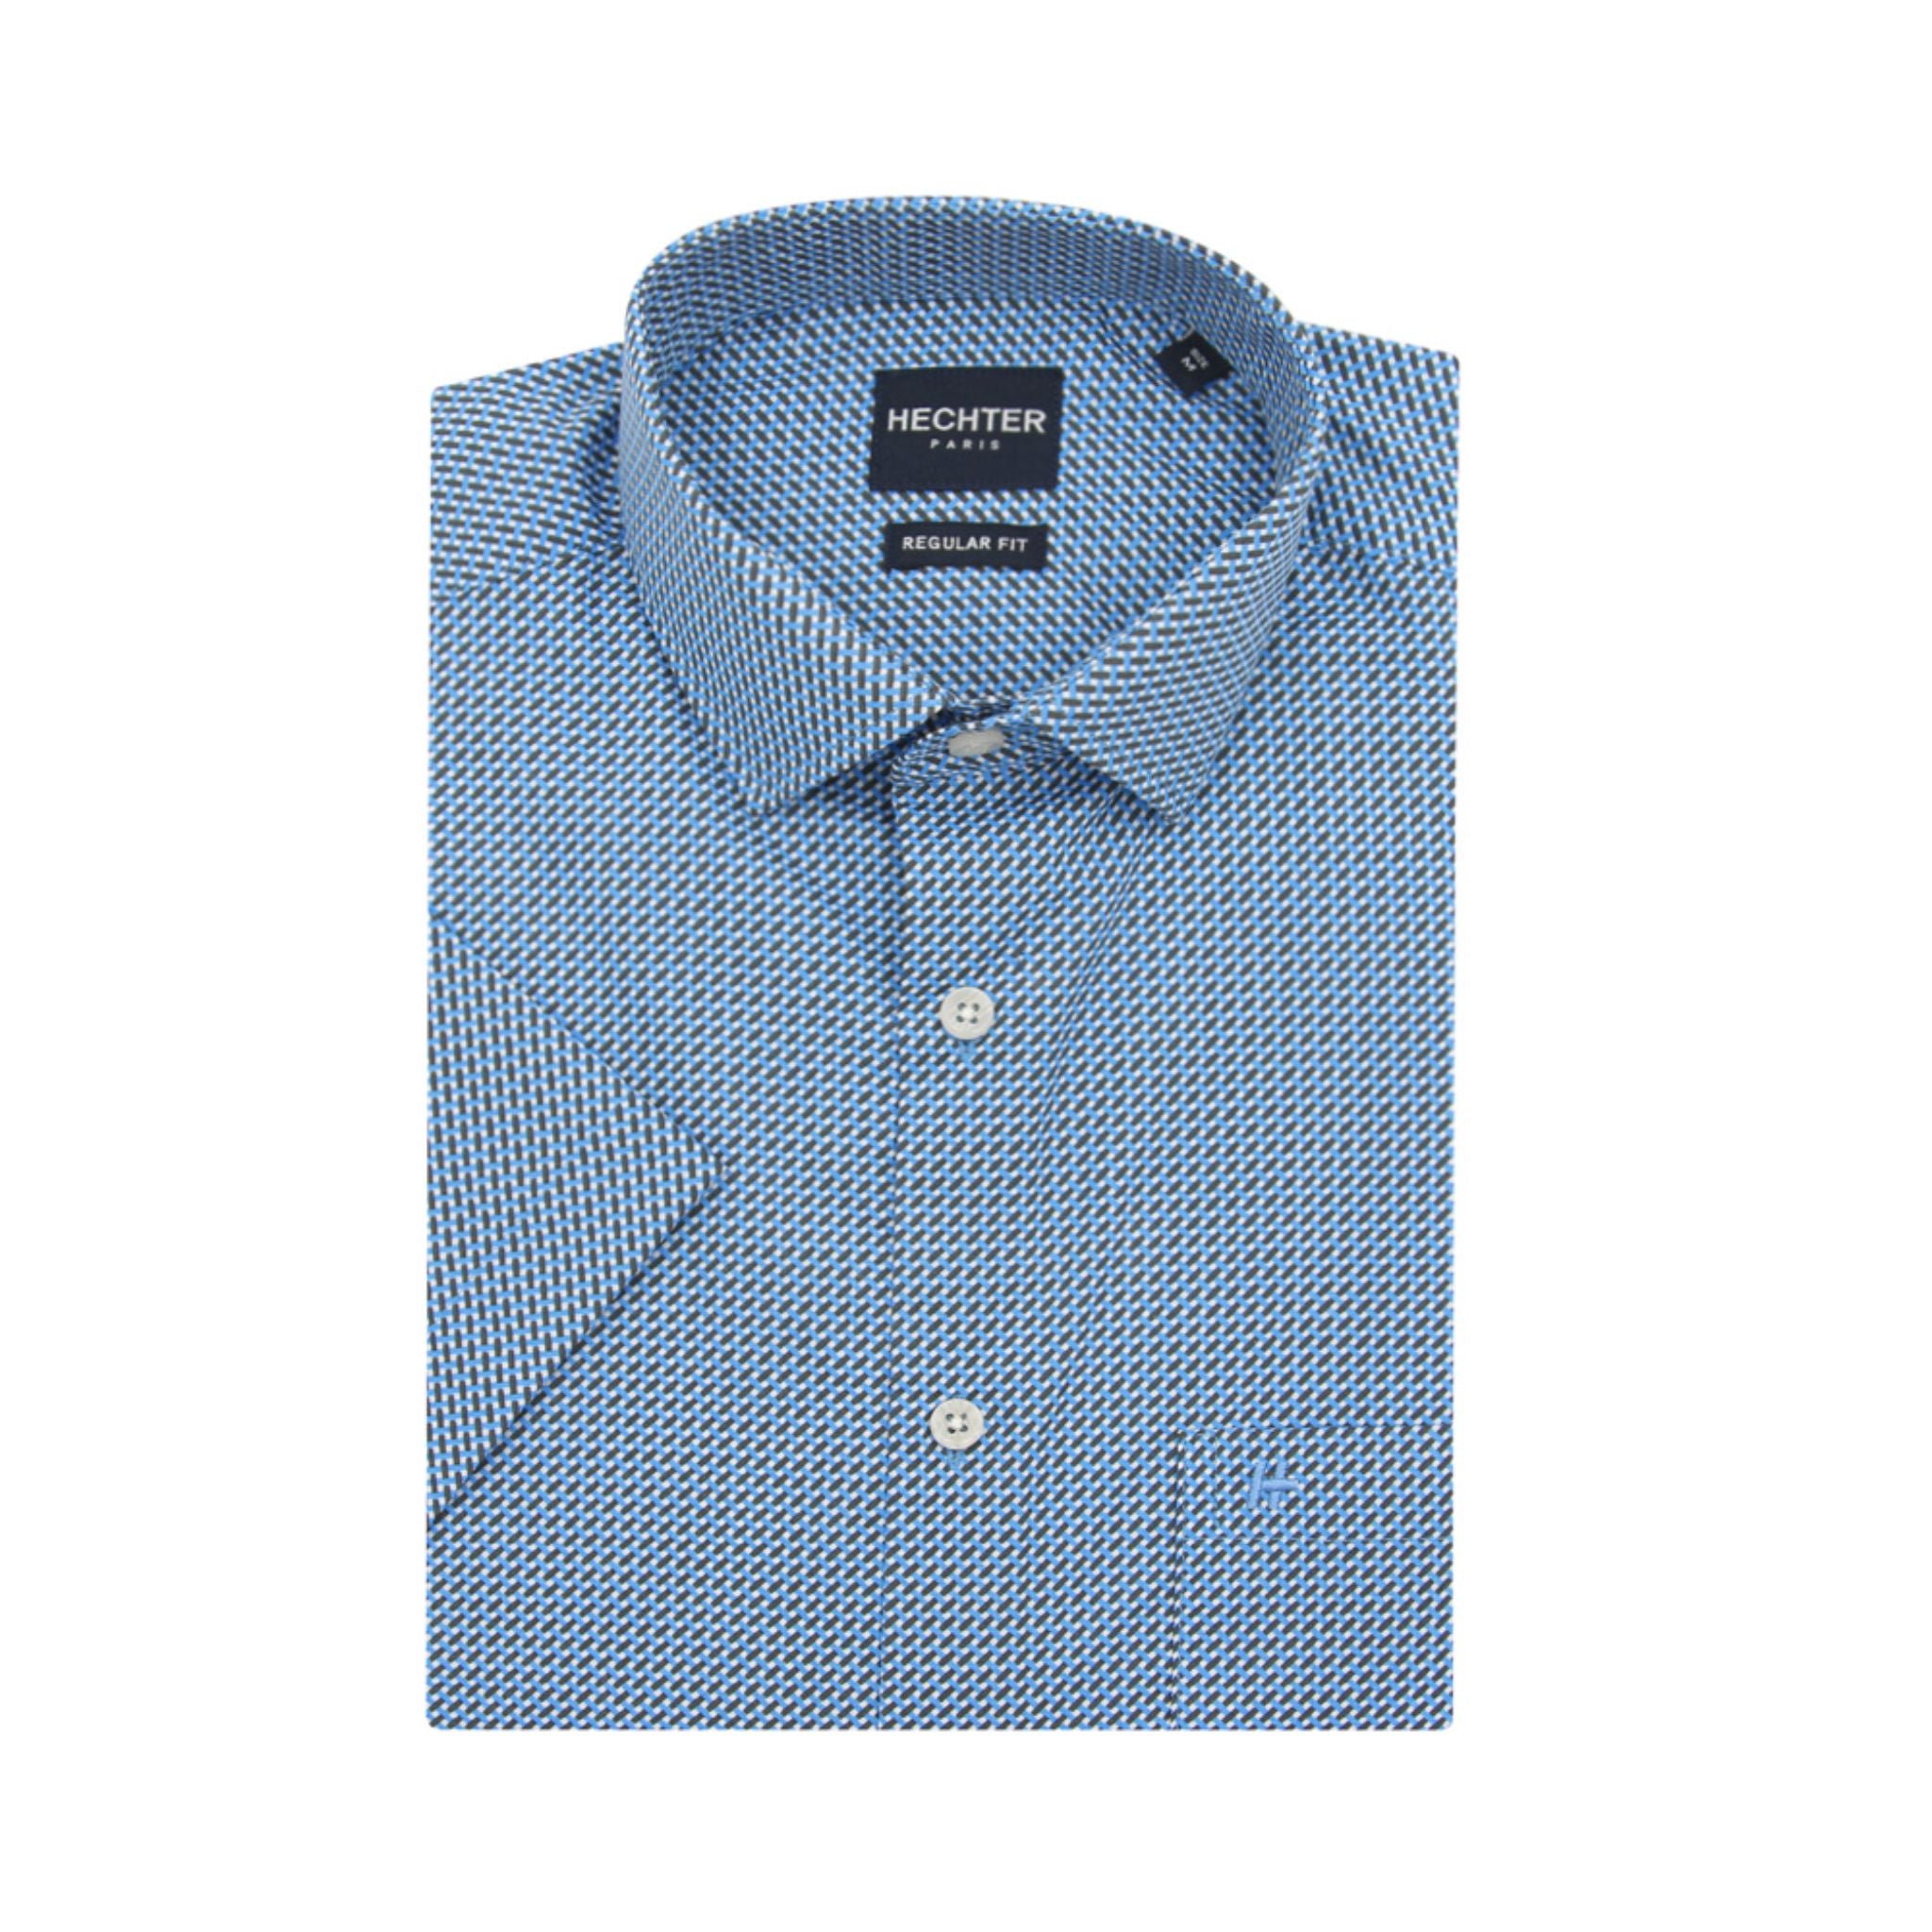 HECHTER Short-Sleeved Shirt - Blue & Brown Interlace Print